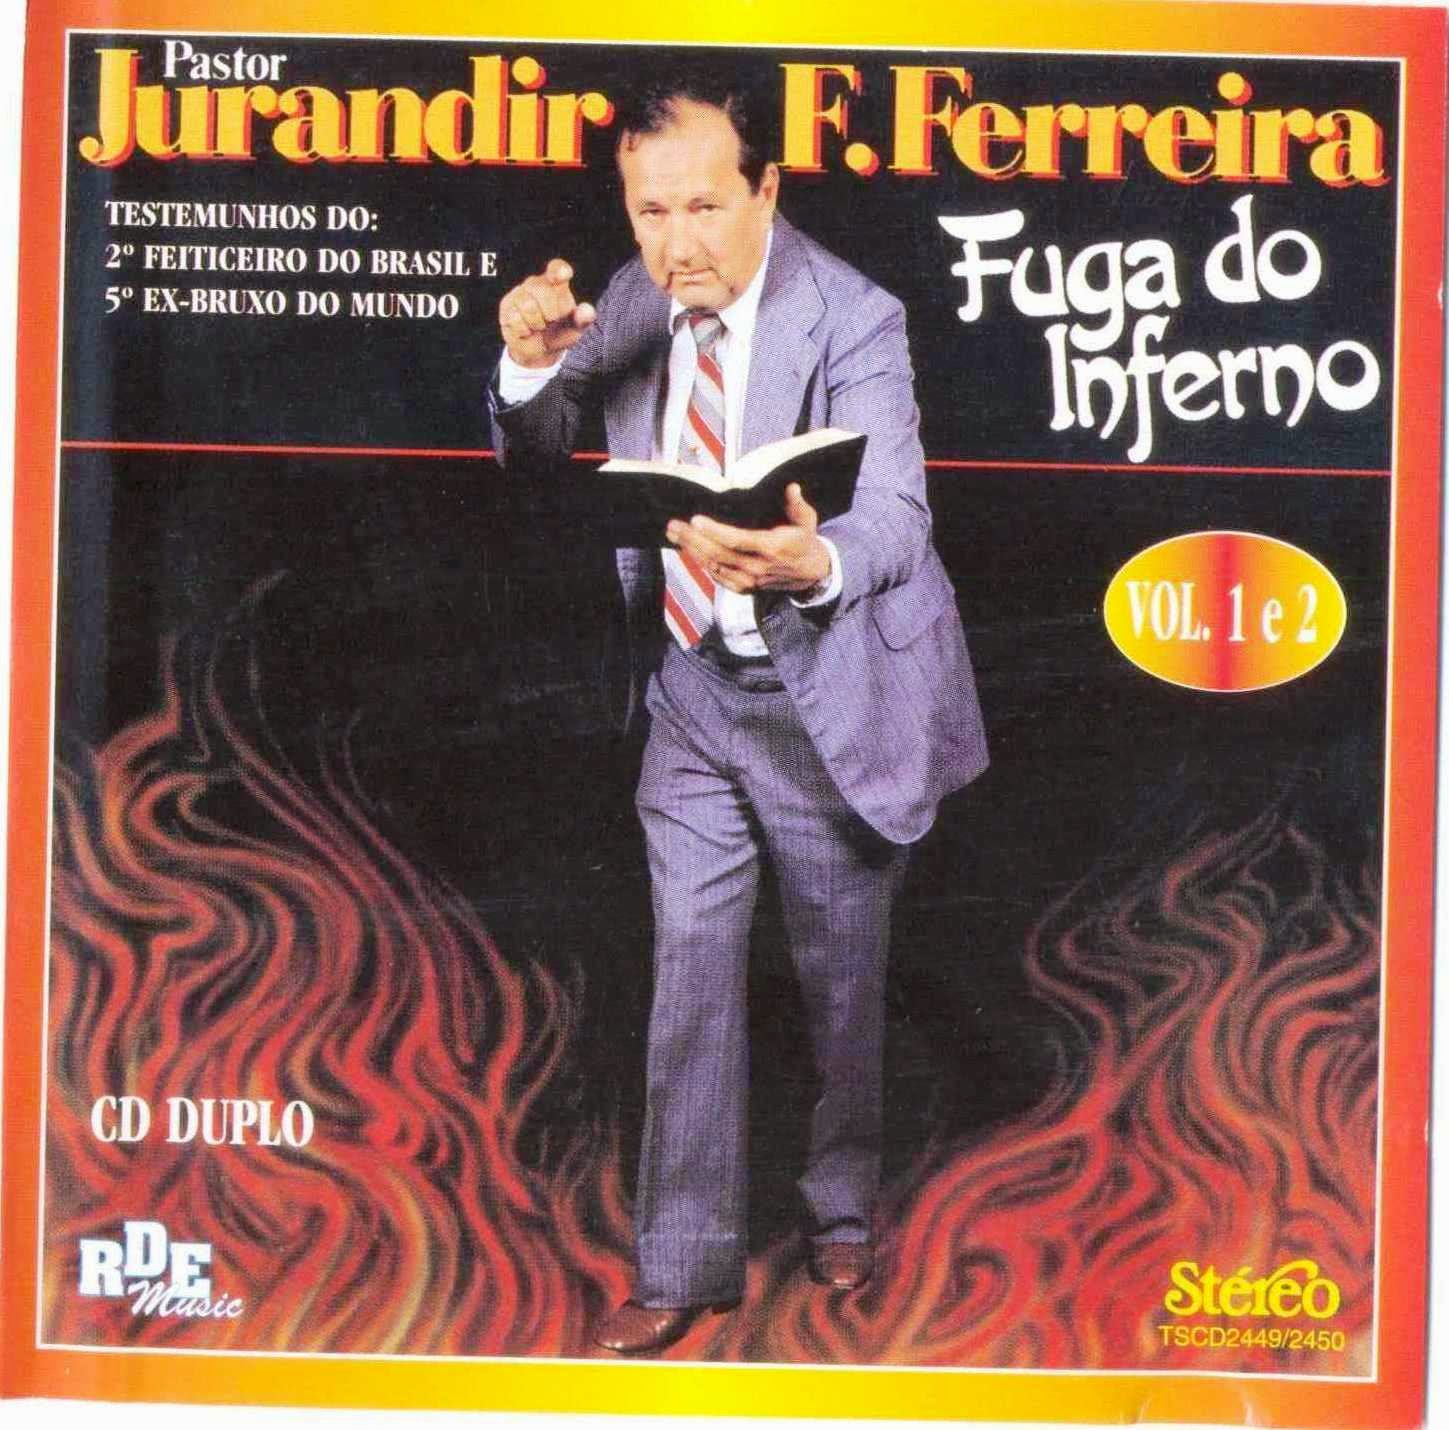 Jurandir Ferreira, Pastor - Testemunho  - Fuga do Inferno - Volume 1 e 2